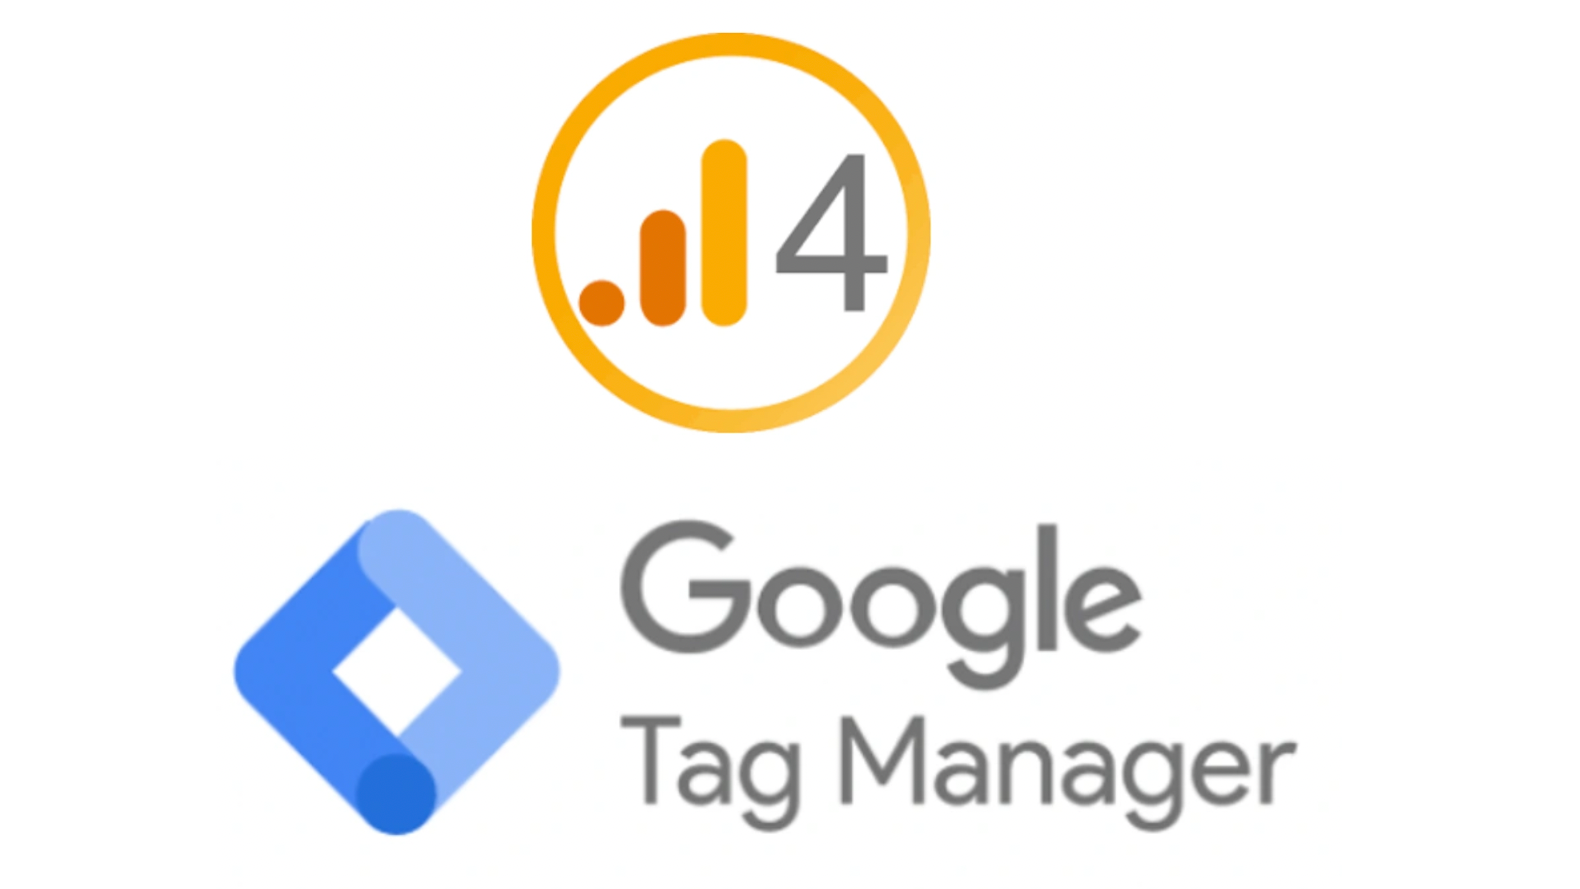 Représentation de la formation : Formation Google Analytics 4 & Tag Manager : Intermédiaire à Avancé